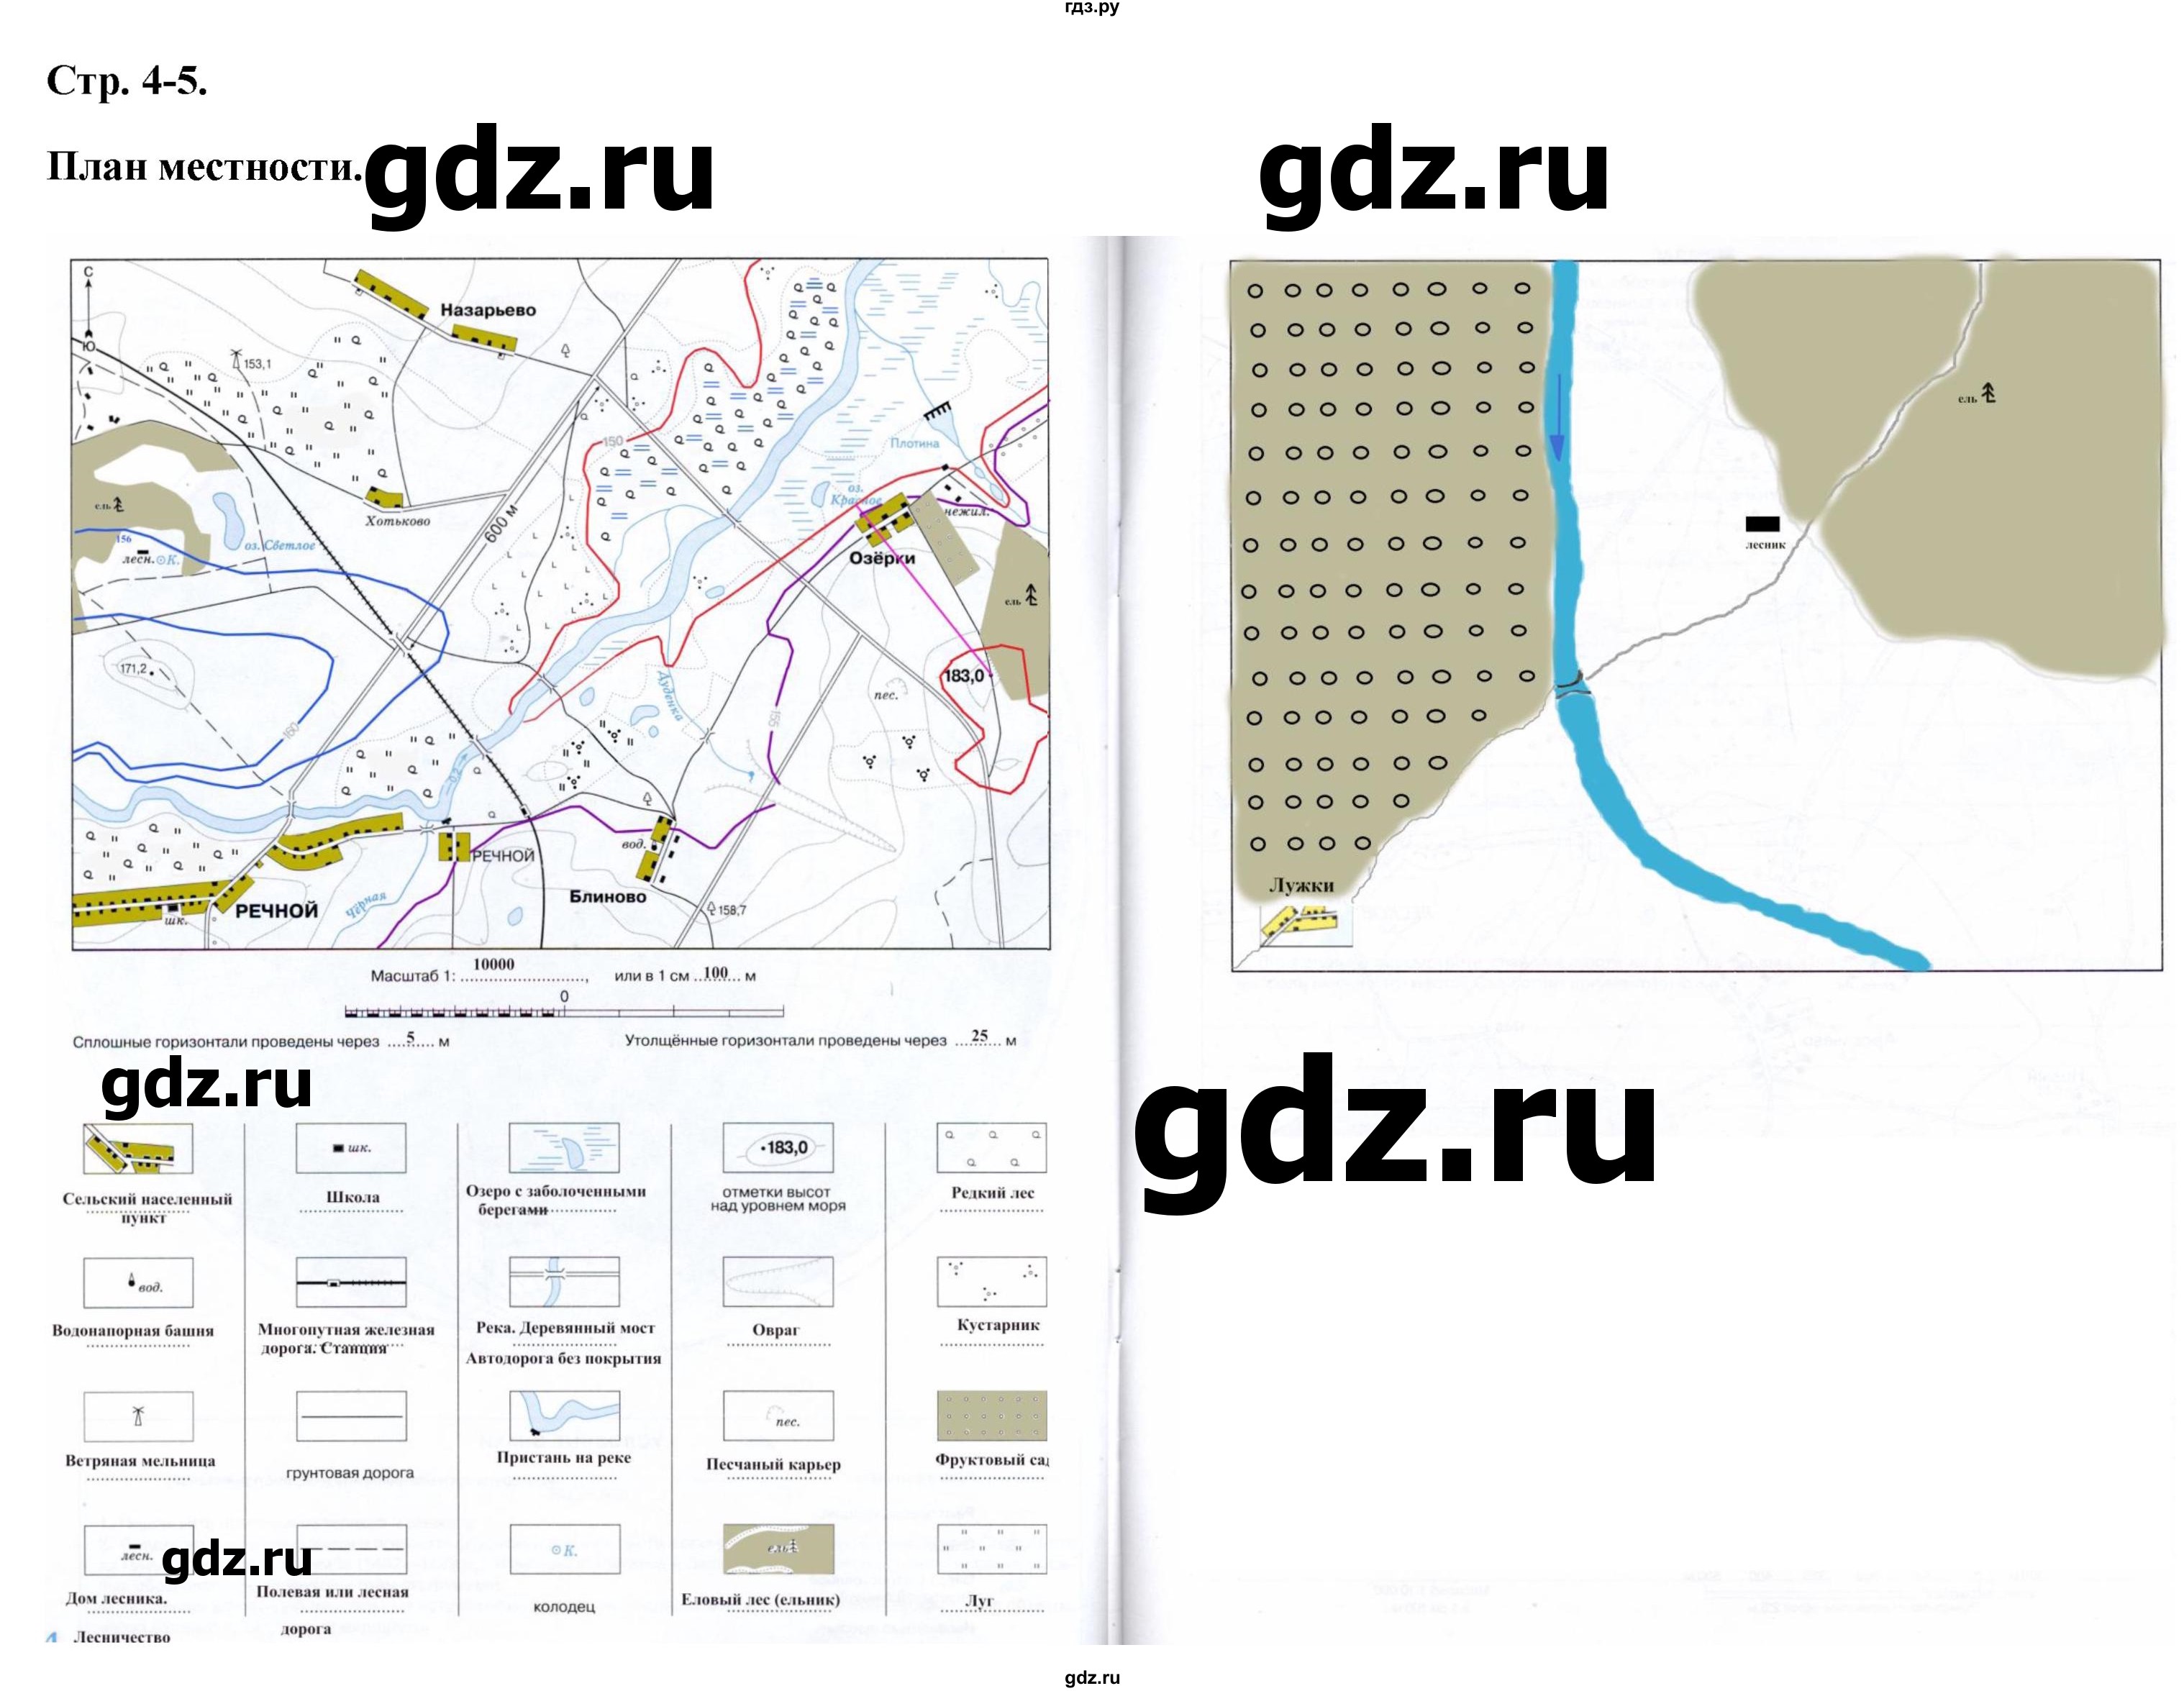 ГДЗ контурные карты стр.4-5 география 6 класс контурные карты Курбский,Курчина